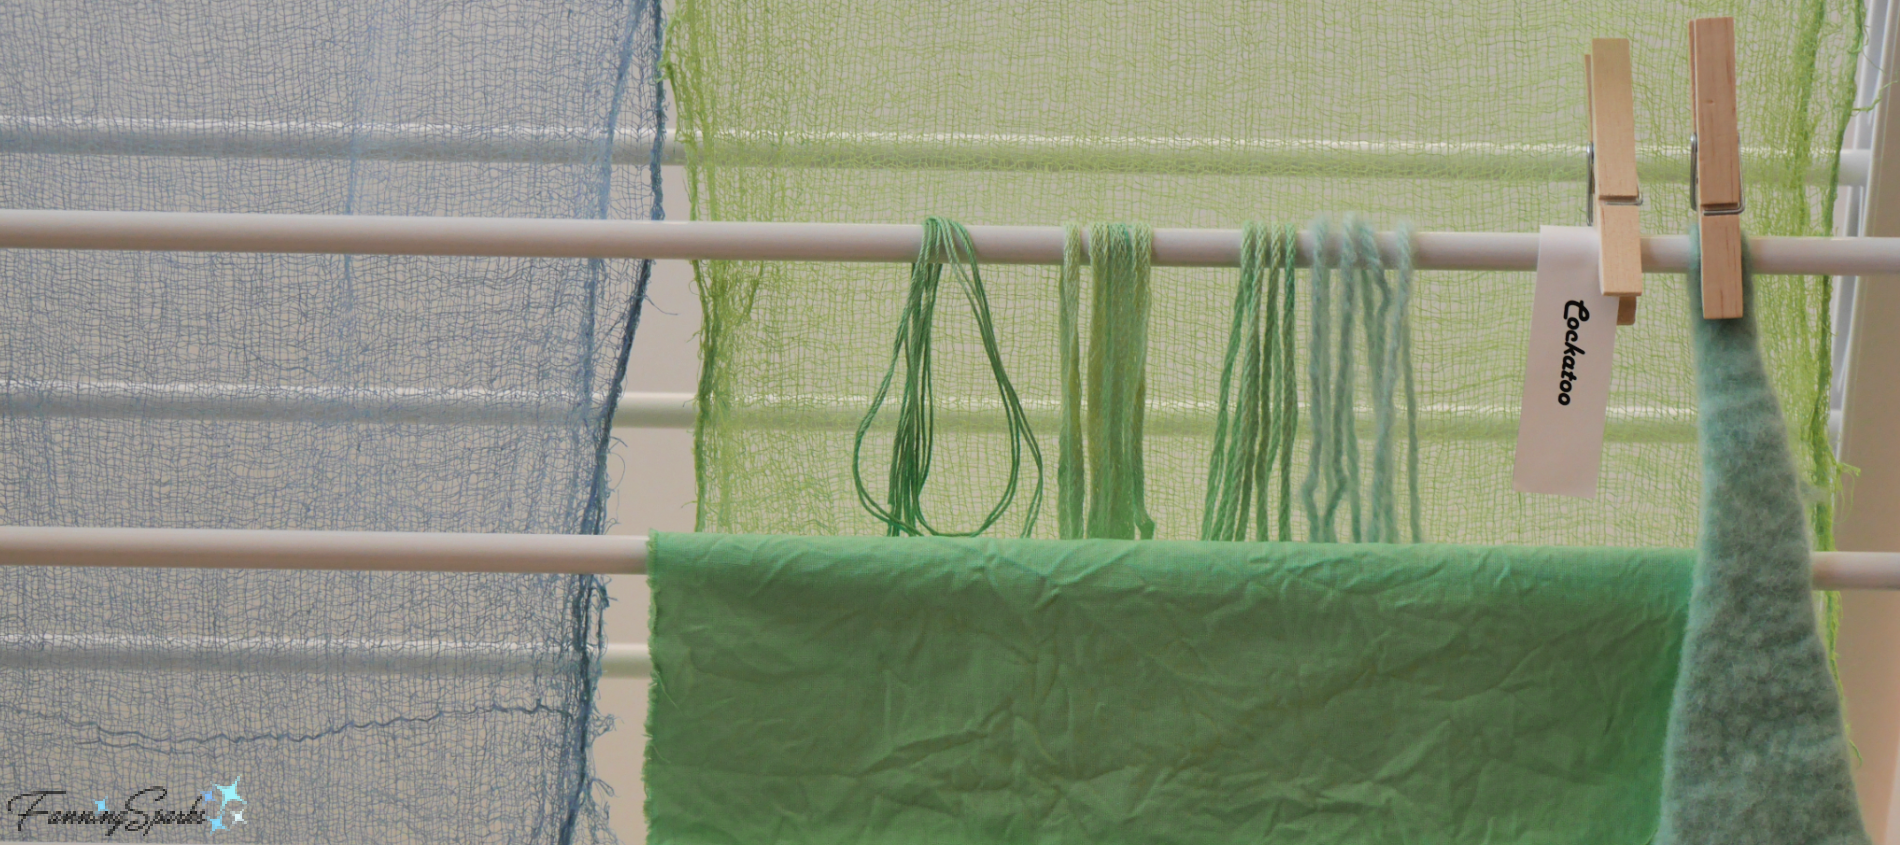 Rit Fabric Dye  How to dye fabric, Dye shirt, Hand dyed clothing